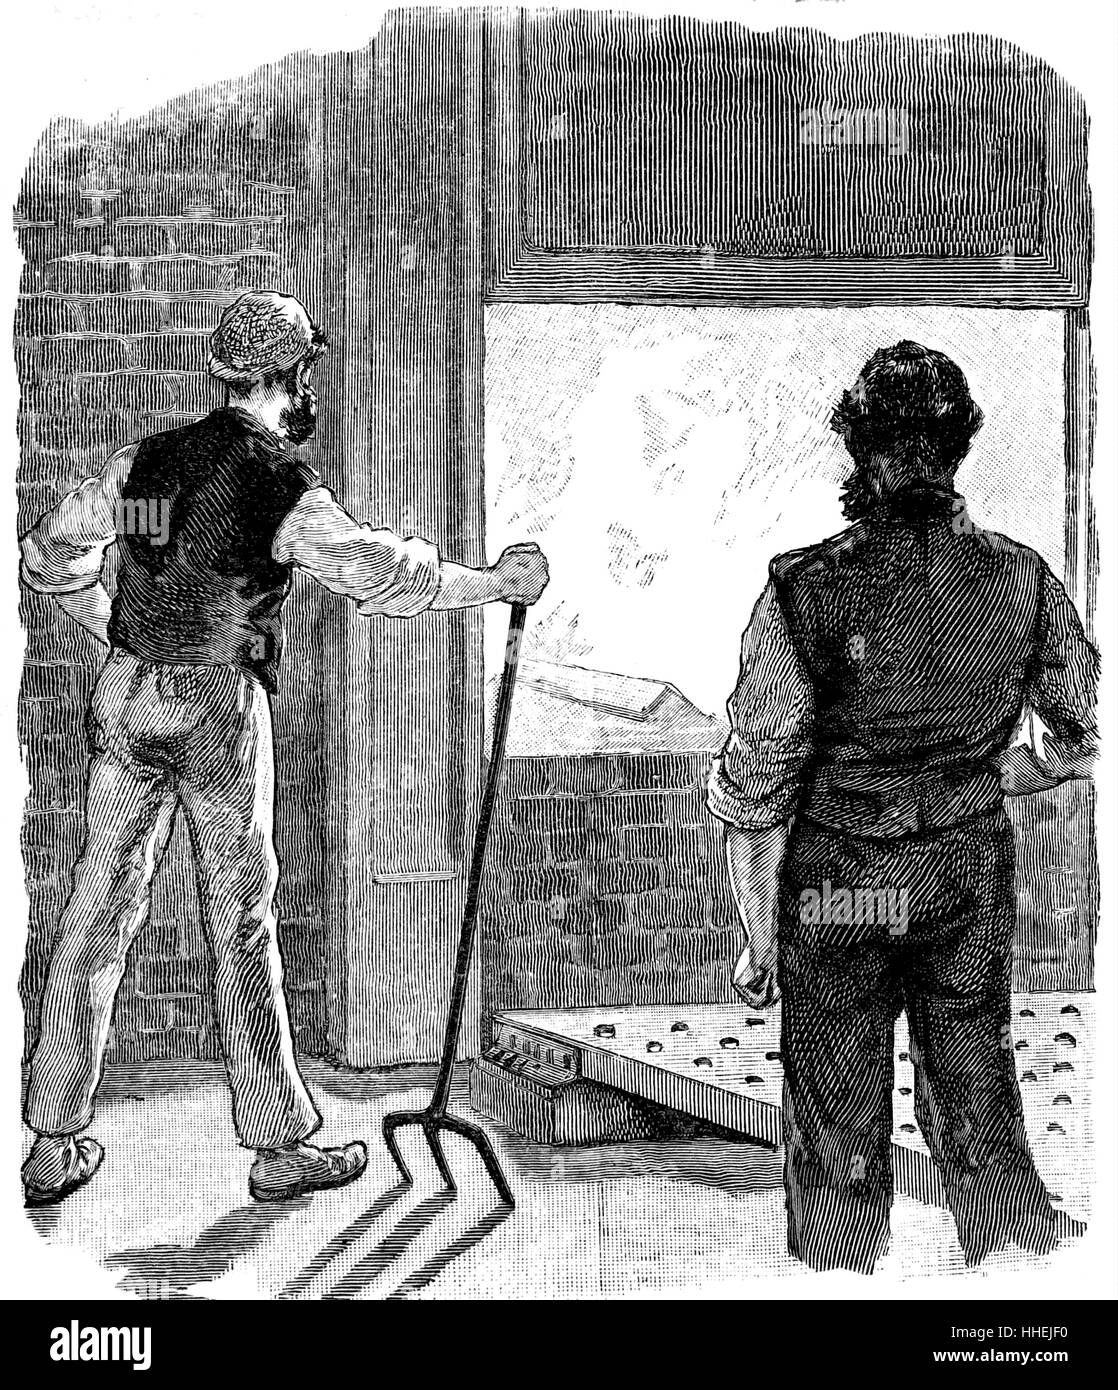 Abbildung: Darstellung der Heizung die Bar von Winkel Stahl für die Rippe von einem Schiff, so dass es auf die Biegung Platte geformt werden konnte. Vom 19. Jahrhundert Stockfoto